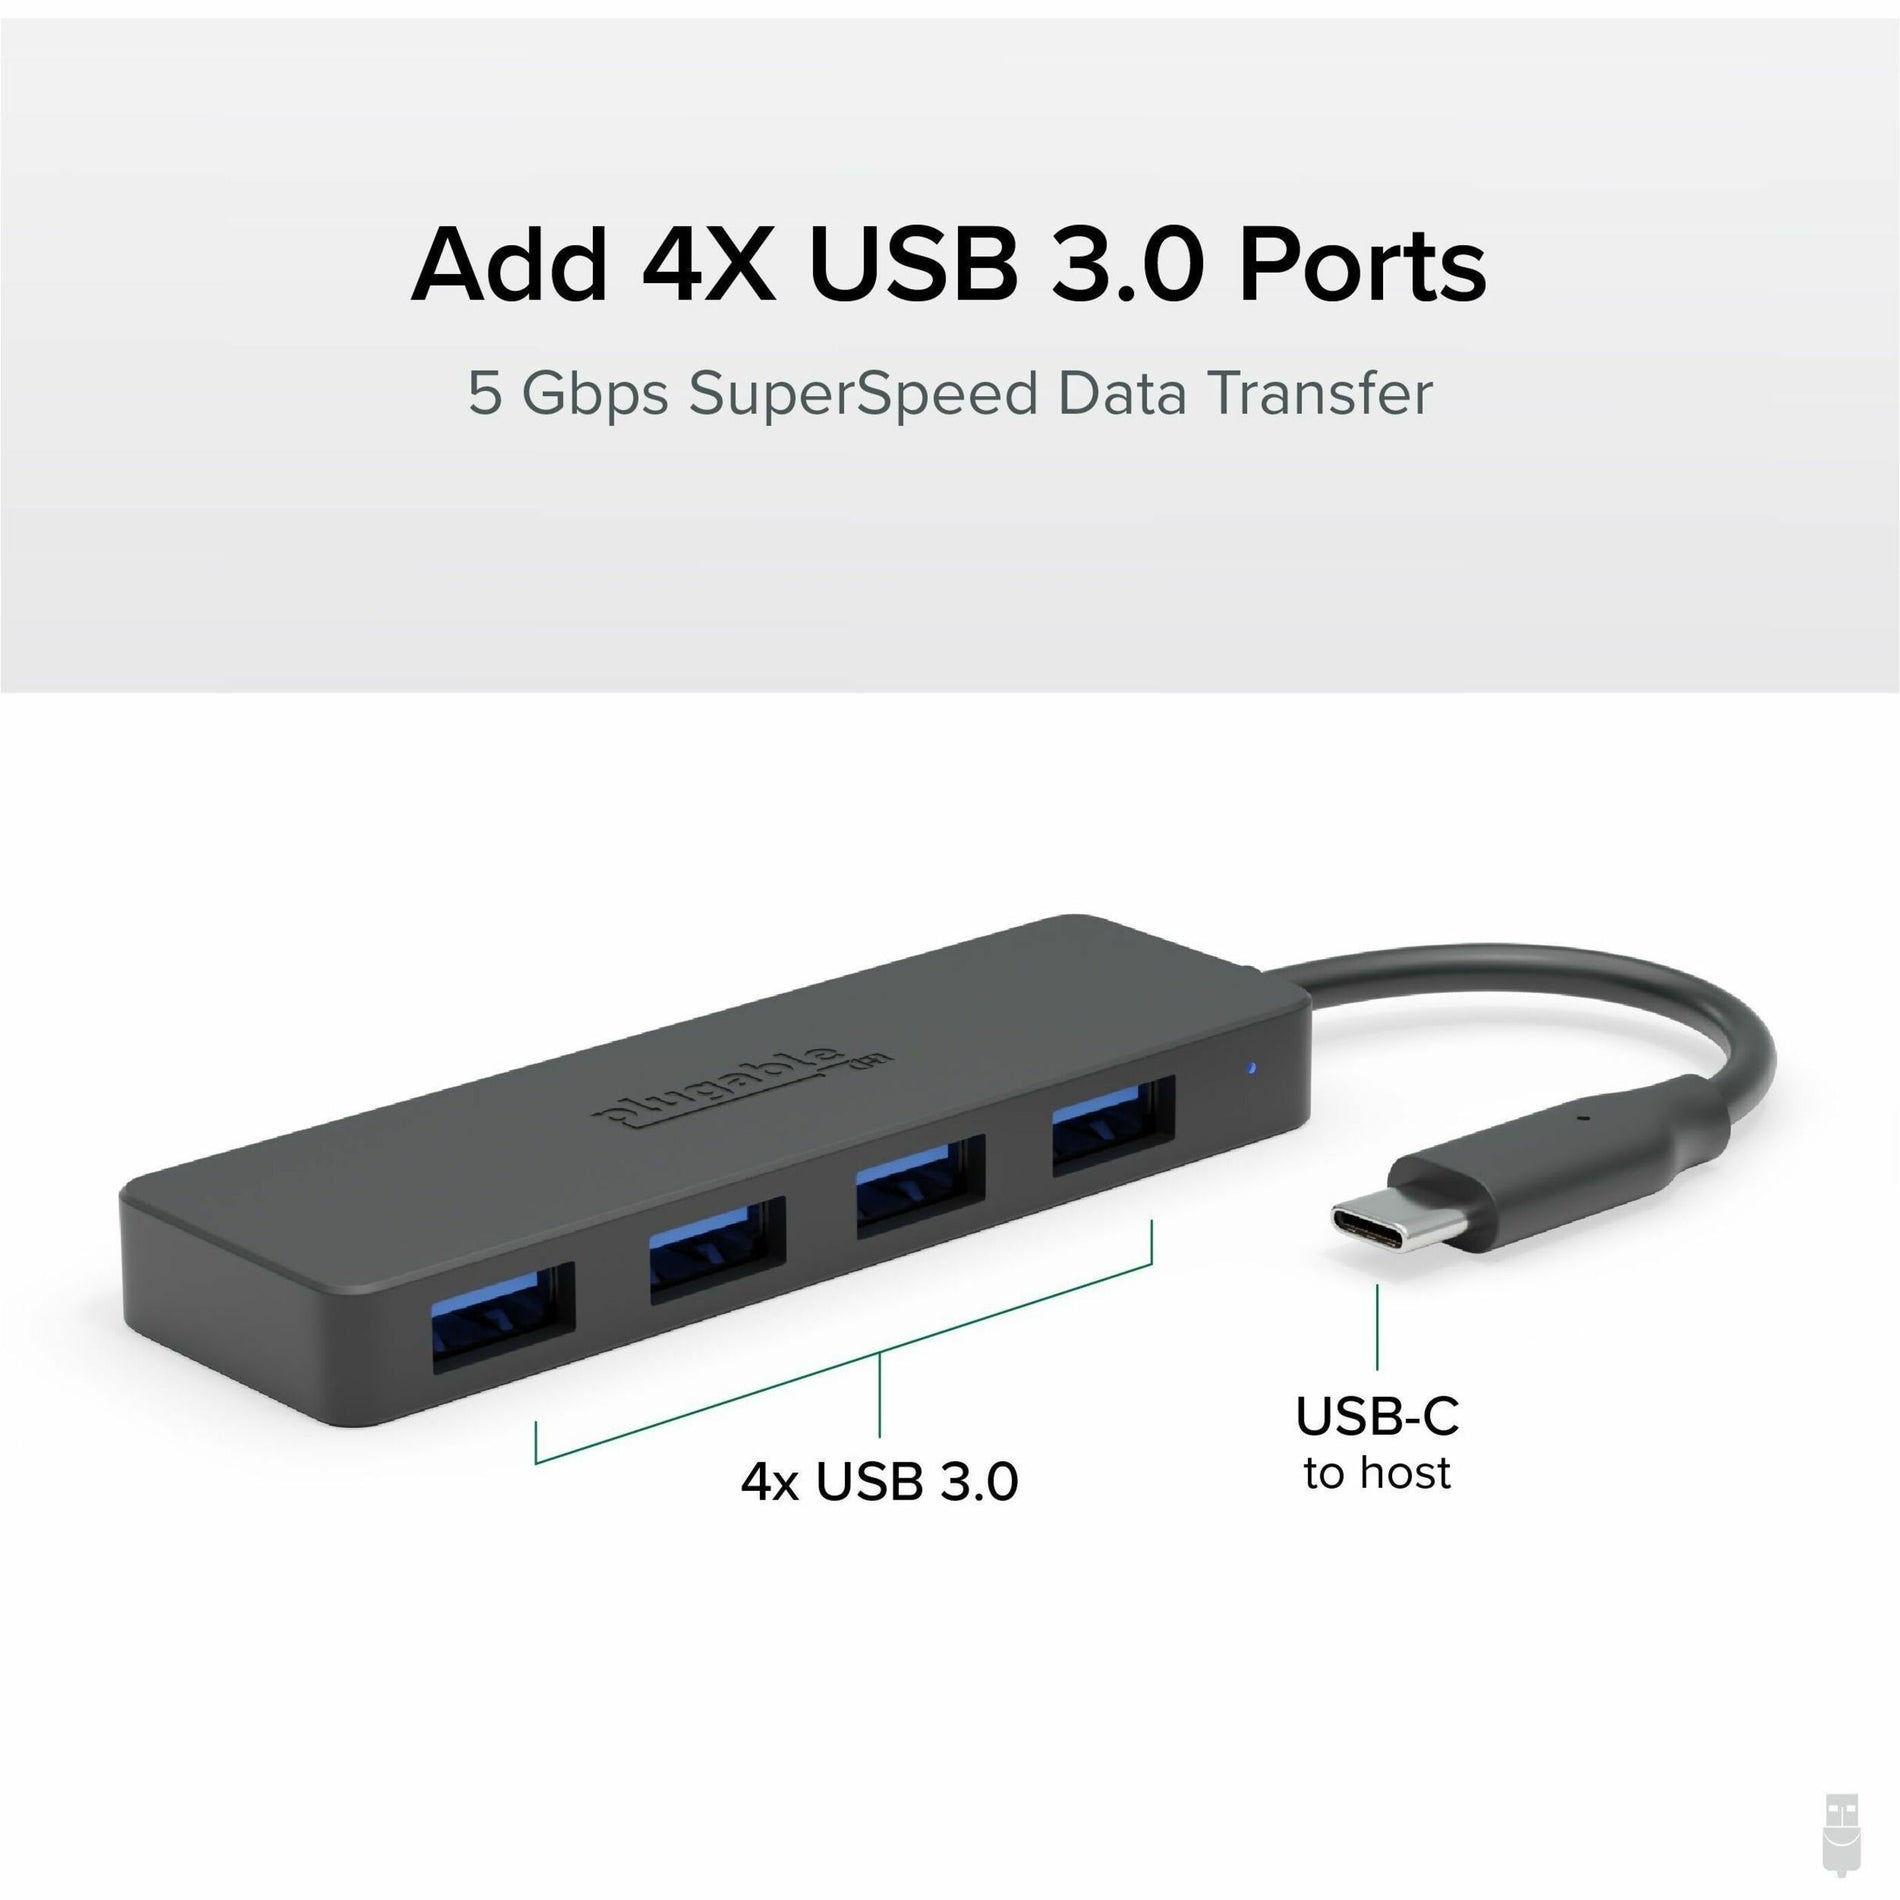 플러그 가능 USBC-HUB4A USB 허브 4 USB 3.0 포트 블랙